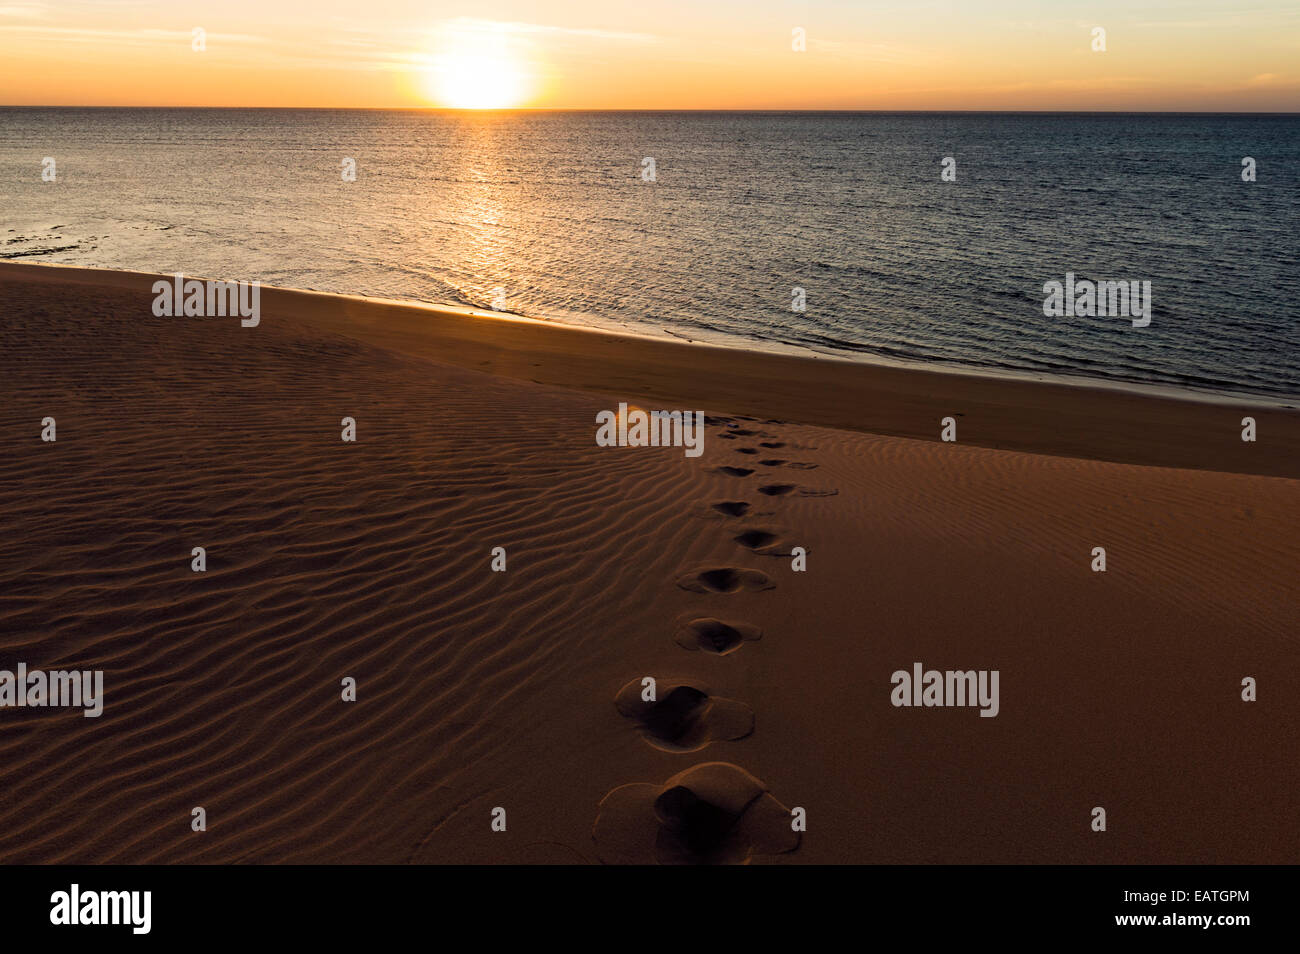 Fußspuren führen hinunter eine Sanddüne bei Sonnenuntergang an einem einsamen Strand. Stockfoto